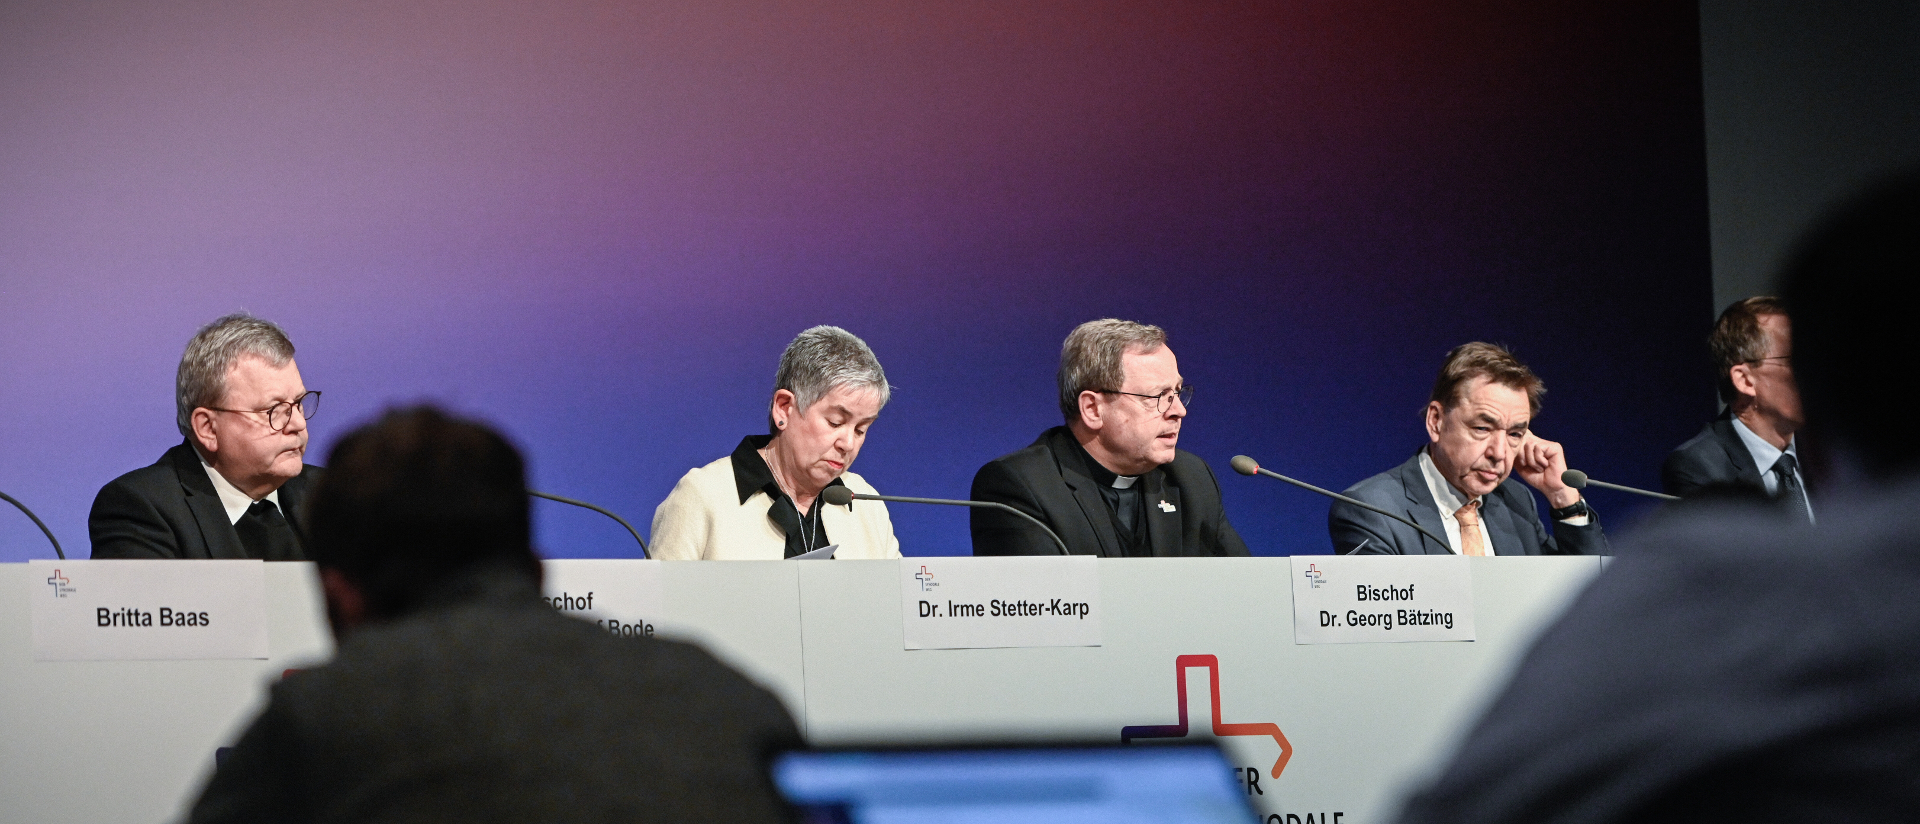 Pressekonferenz zum Abschluss der Fünften Synodalversammlung (v.l.n.r.): Bischof Franz-Josef Bode; Irme Stetter-Karp, Präsidentin des ZdK; Bischof Georg Bätzing, Vorsitzender der Deutschen Bischofskonferenz.